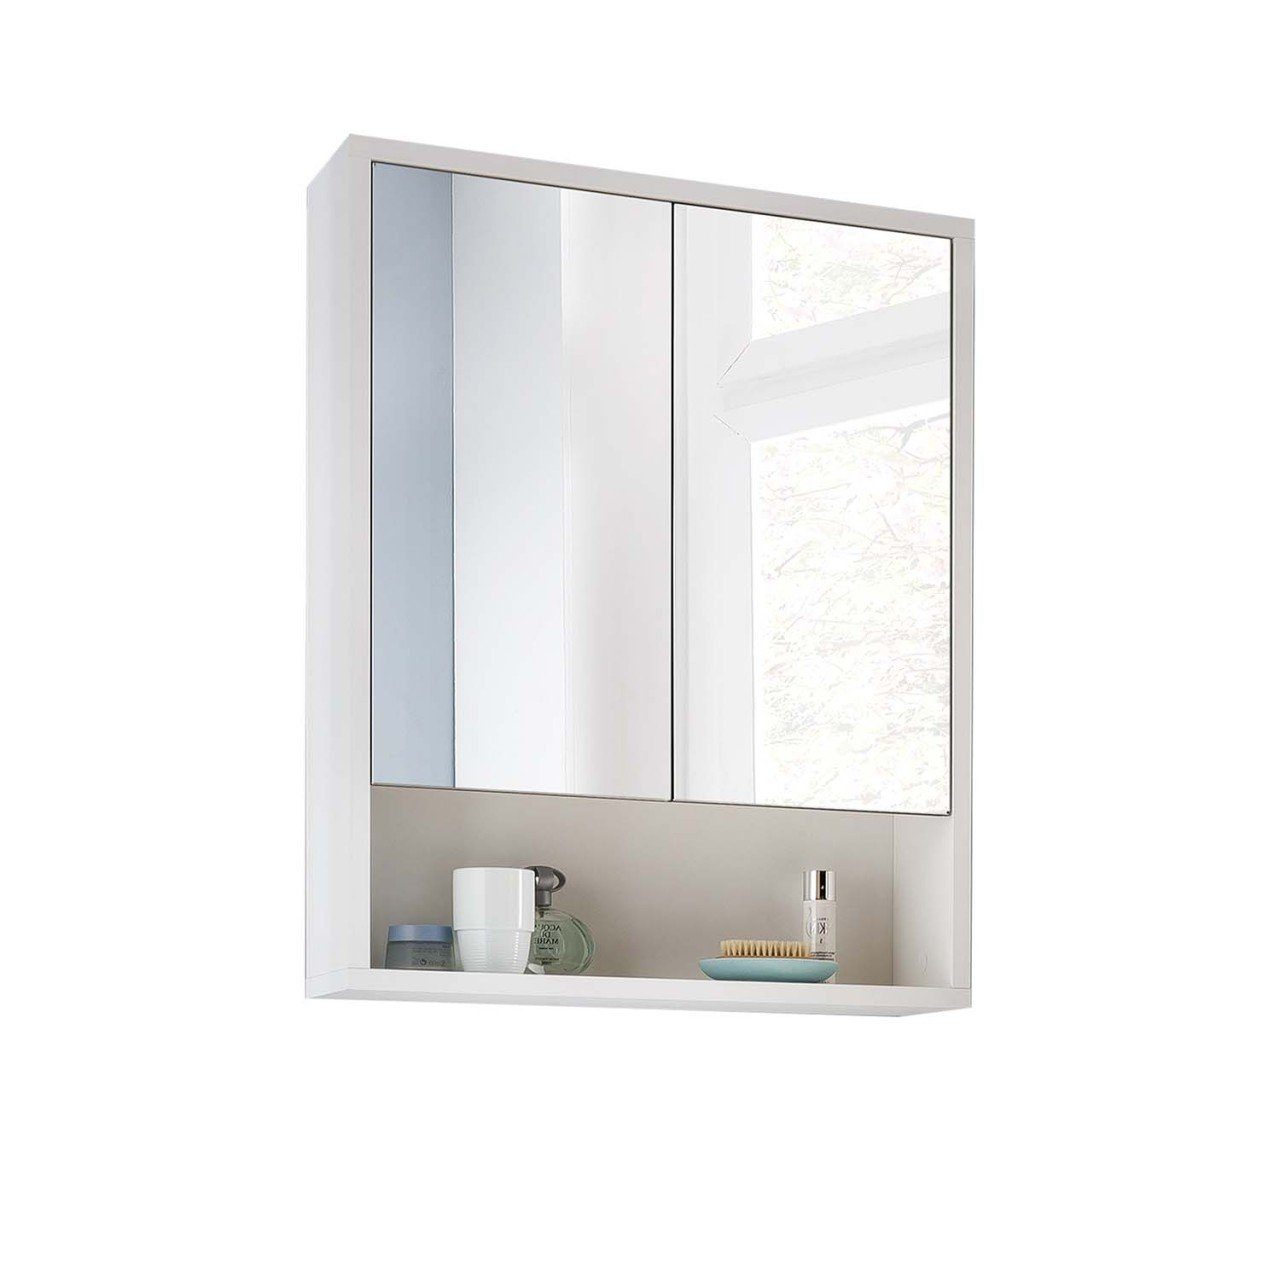 Hometrend Sunset Badezimmerspiegelschrank Spiegelschrank